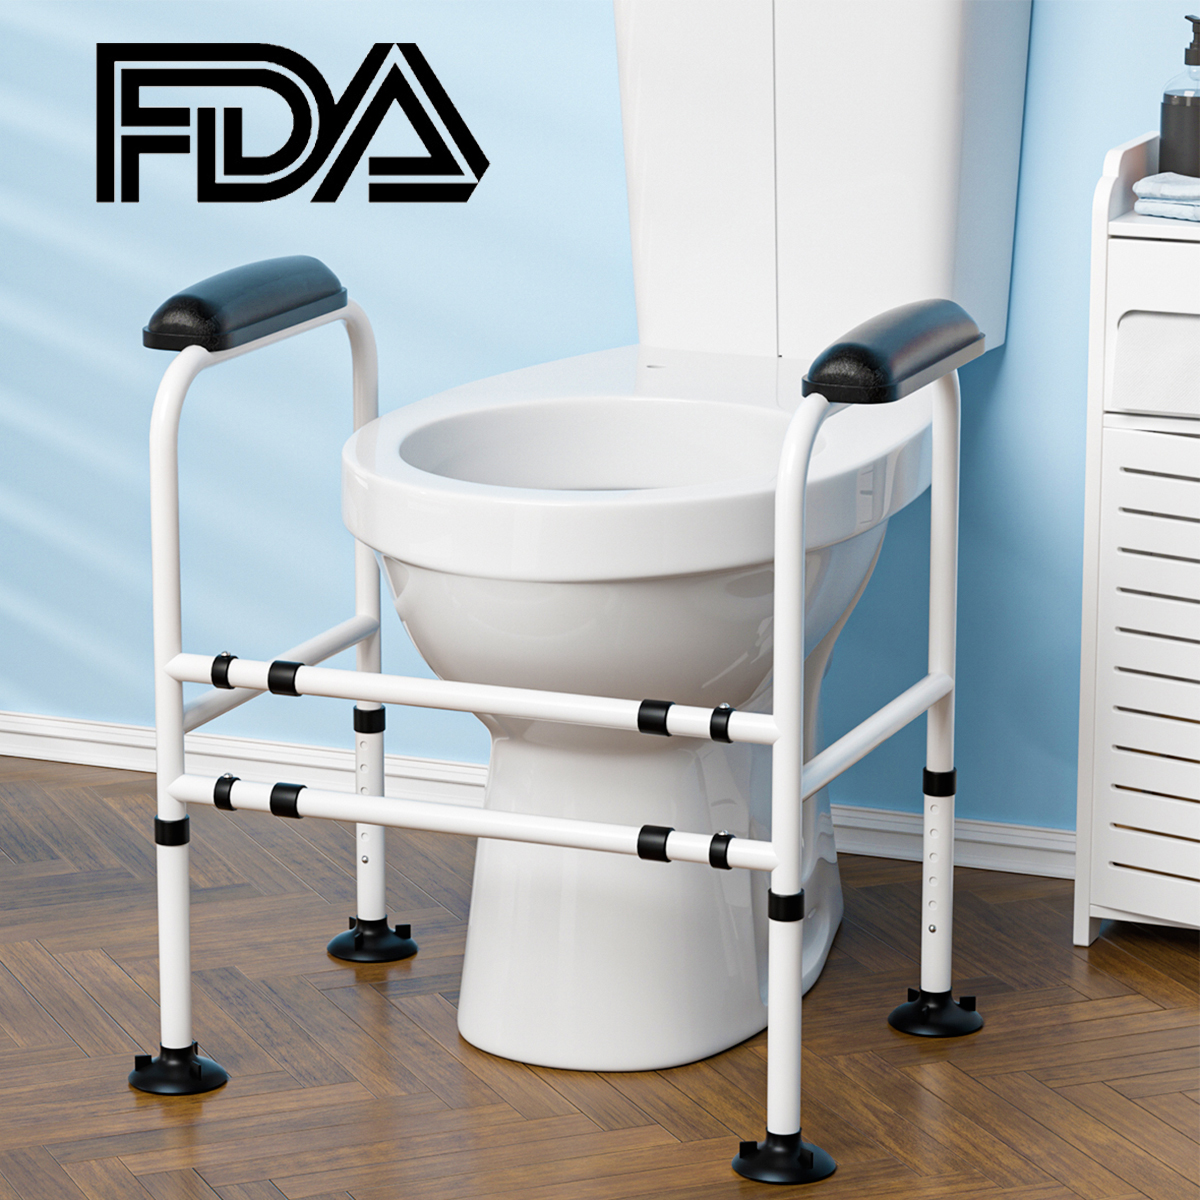 Adjustable-Toilet-Safety-Frame-Hand-Rail-Grab-Bar-Support-for-Elderly-Bathroom-1940089-2